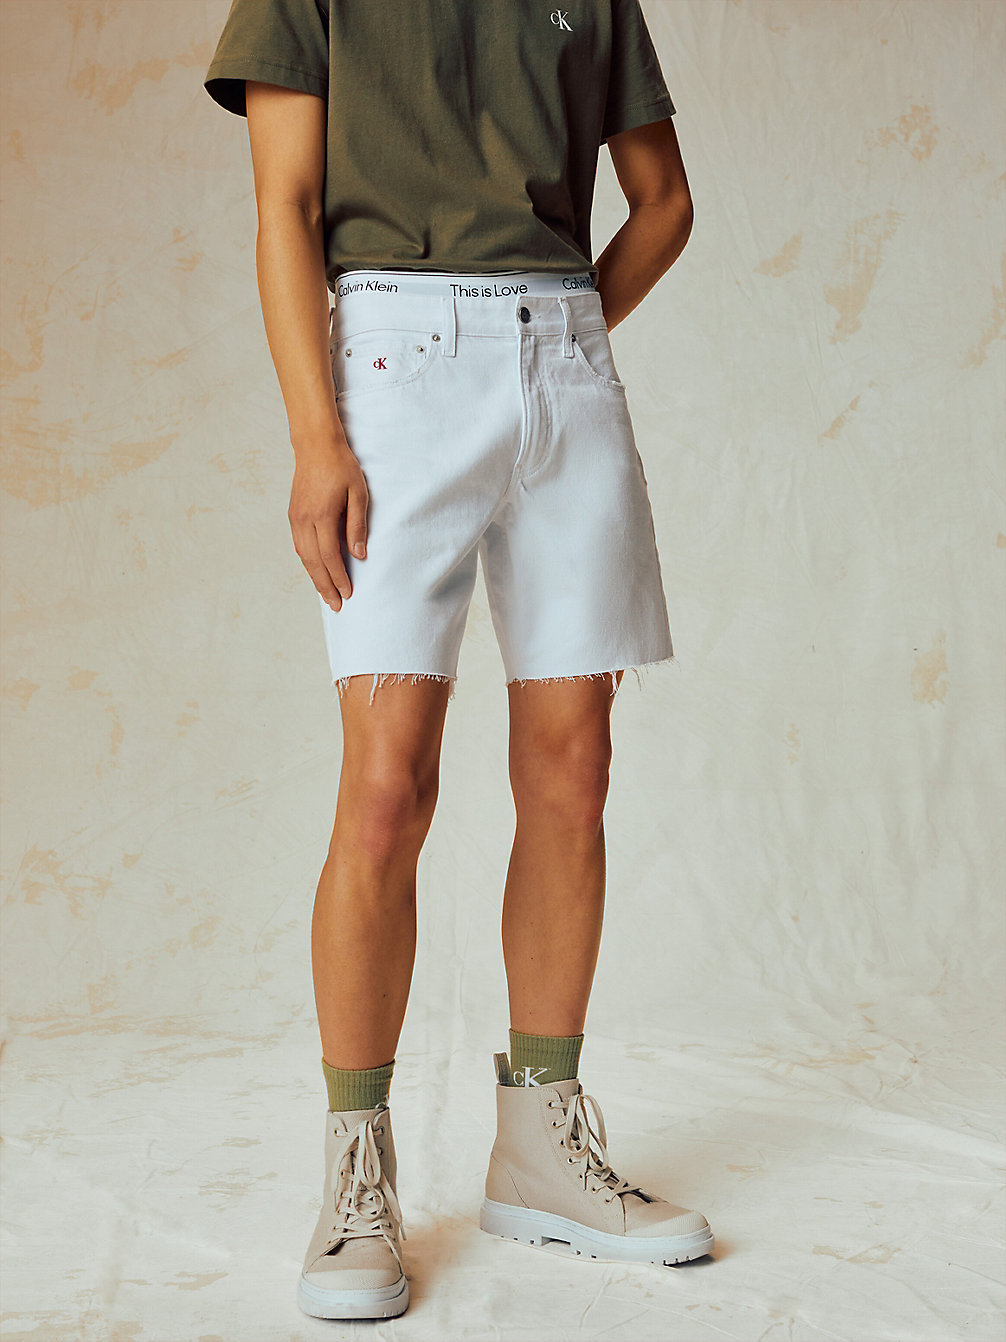 BRIGHT WHITE Denim-Shorts - Pride undefined Herren Calvin Klein